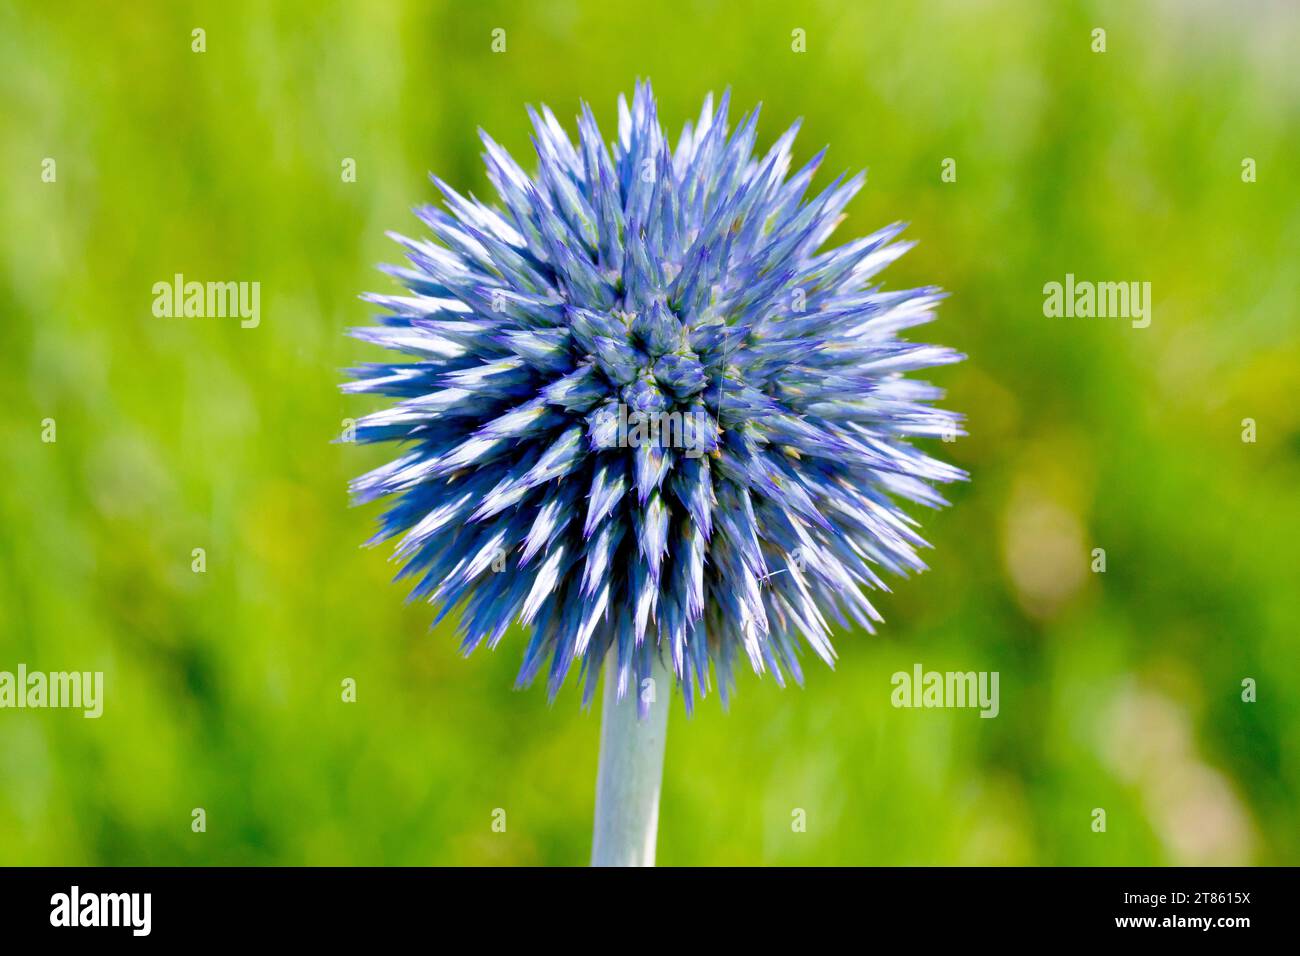 Blue Globe-thistle (echinops, forse bannaticus), primo piano della testa di fiori tonda appuntita della pianta mentre in gemma, un giardino evaso in natura Foto Stock